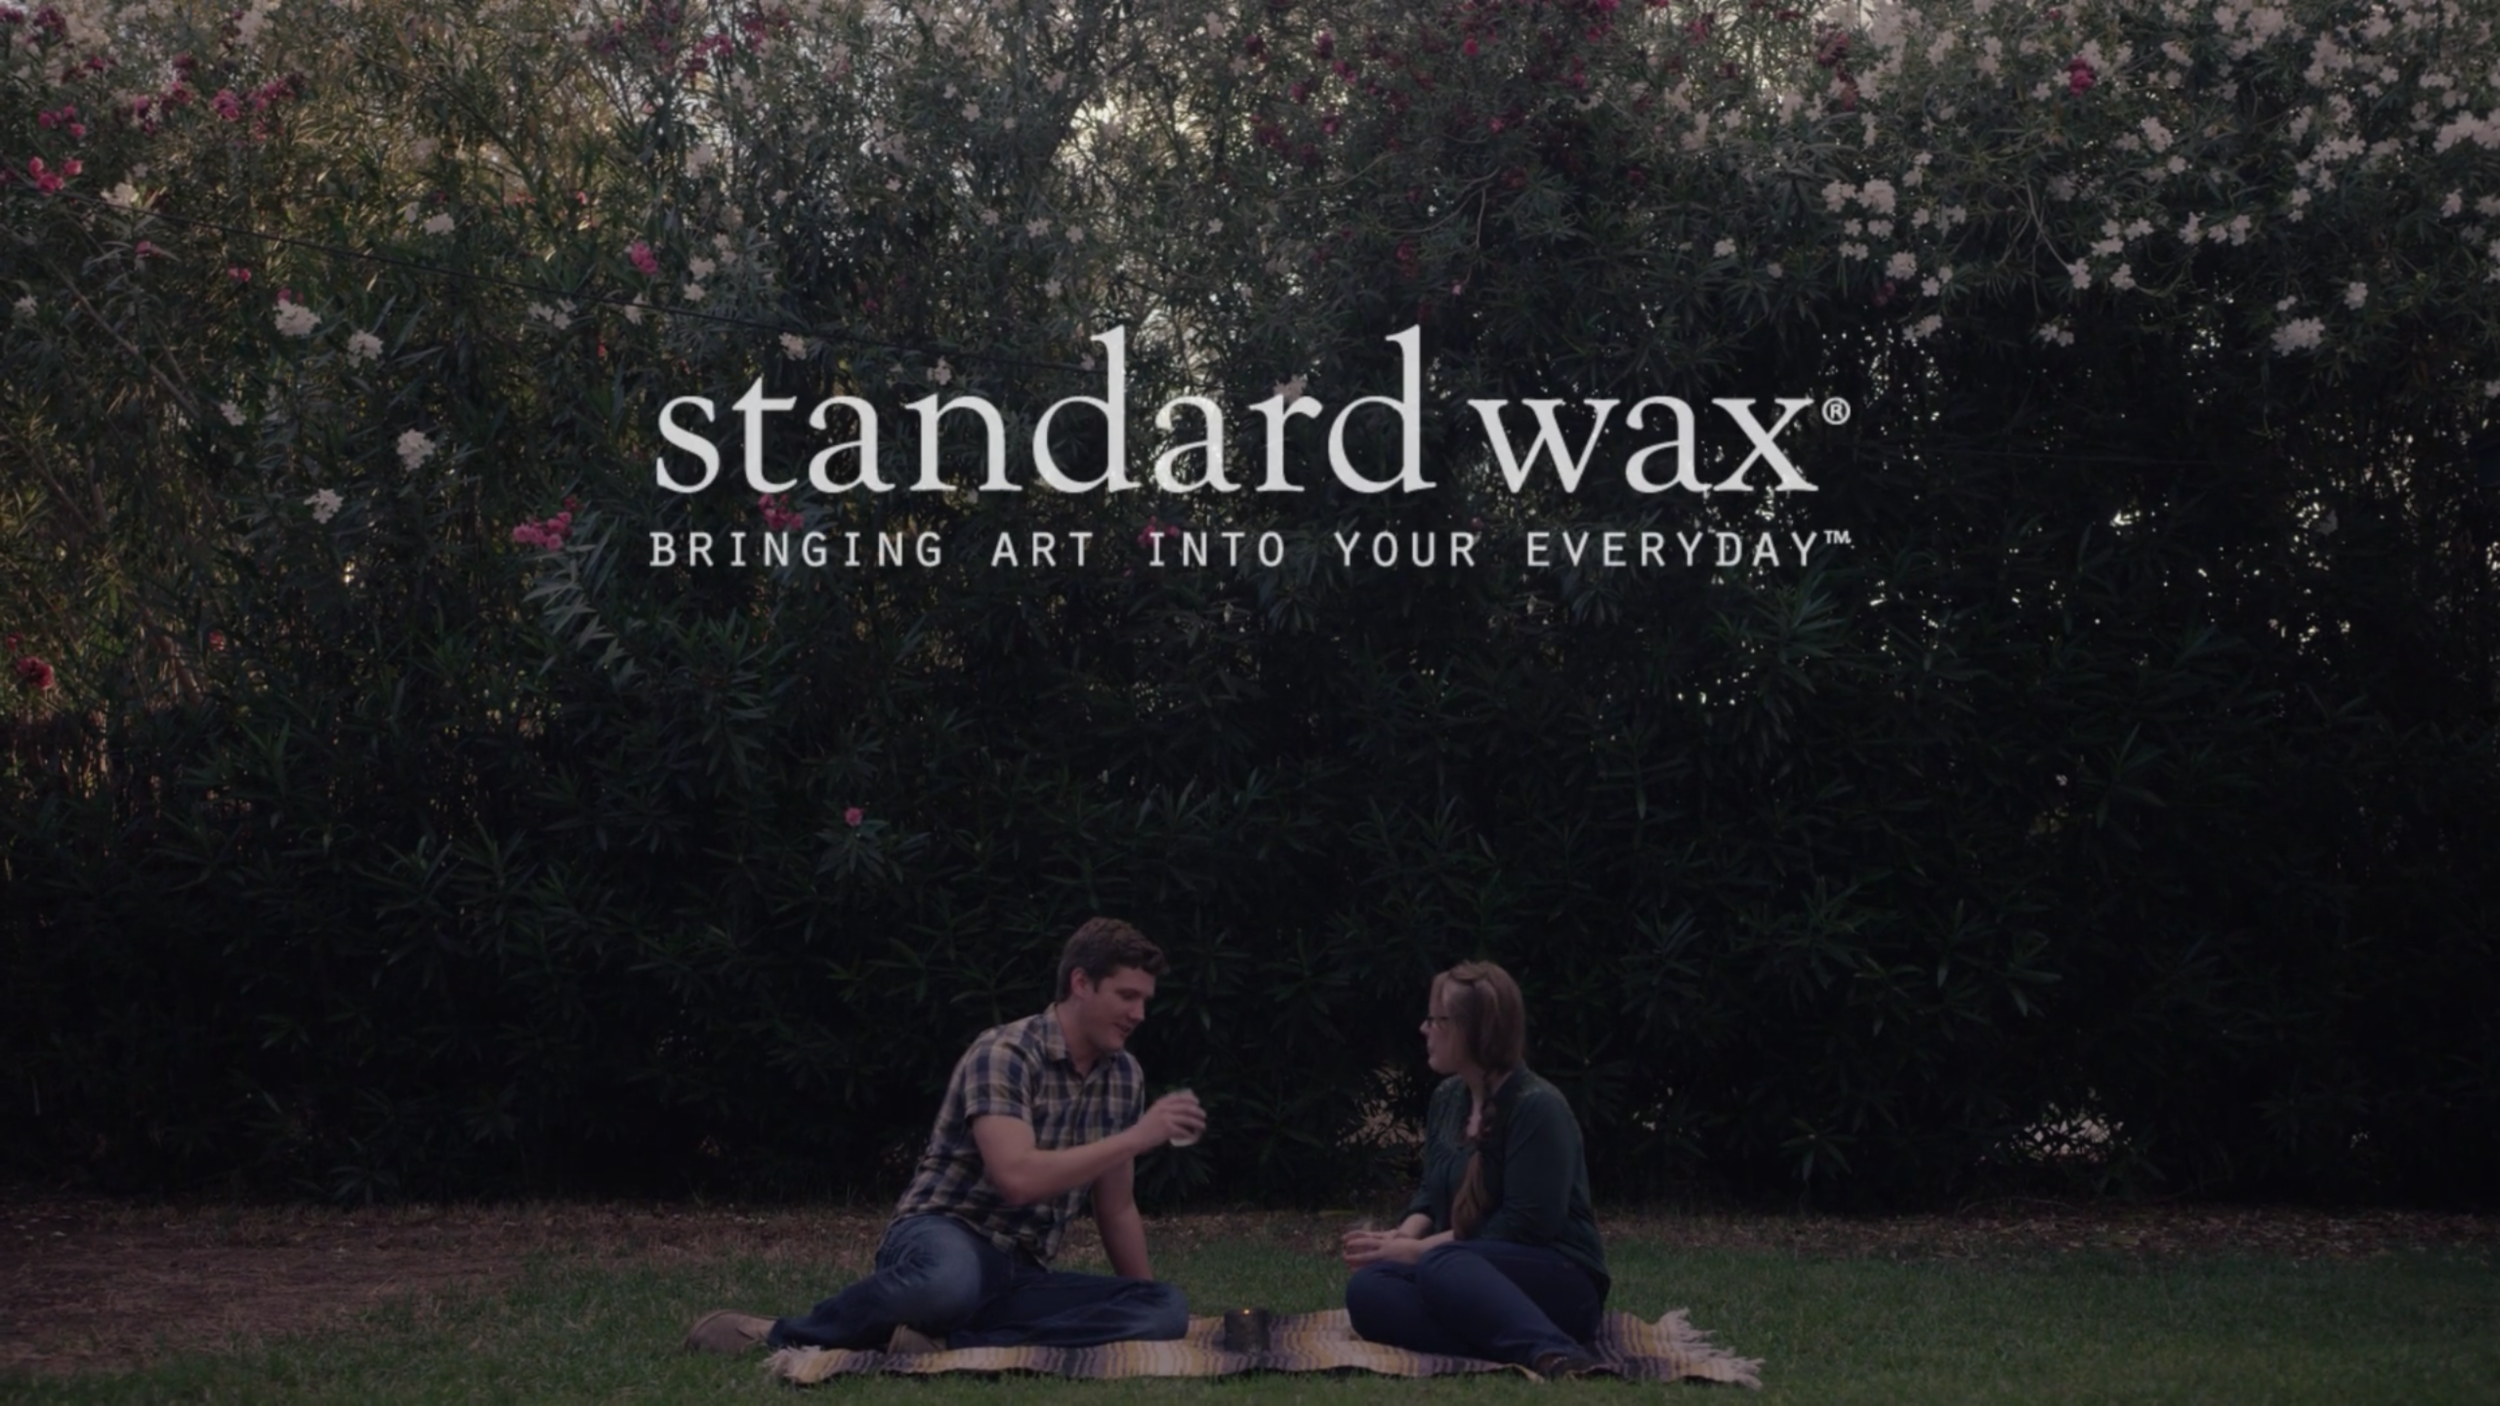 Standard Wax